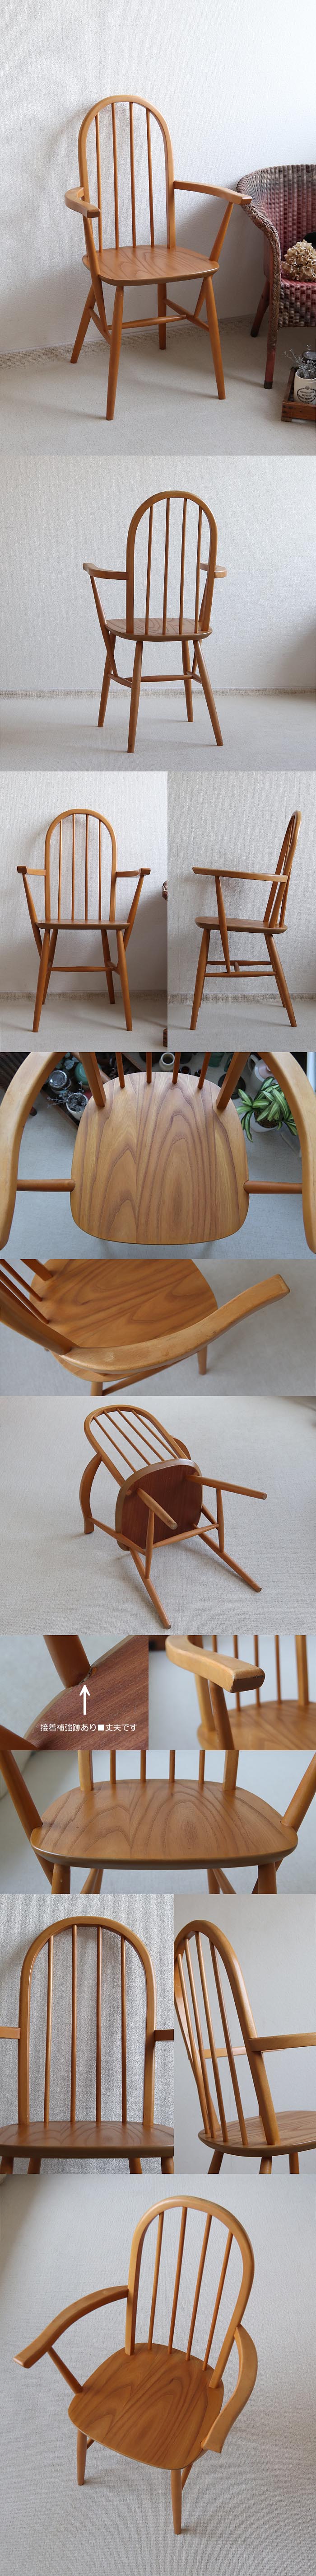 イギリス ヴィンテージ フープバックアームチェア ハイバック 木製椅子 家具「ナチュラル」T-846